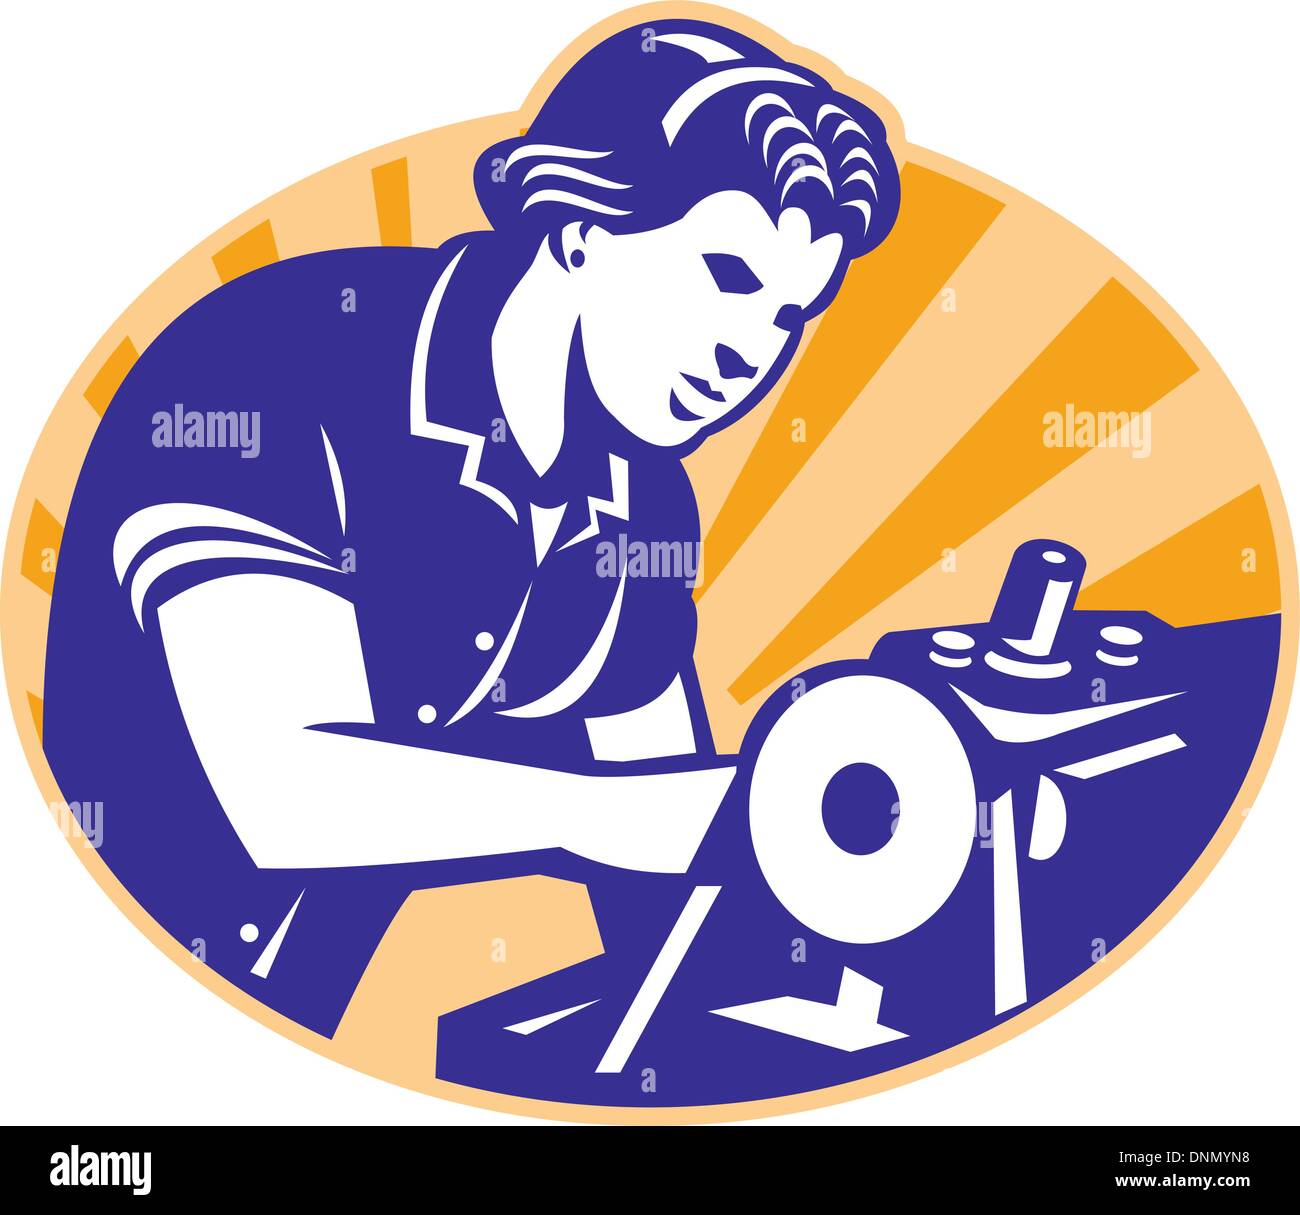 Illustrazione di una femmina di macchinista sarta lavoratore cucire sulla macchina impostata all'interno del cerchio fatto in stile retrò. Illustrazione Vettoriale